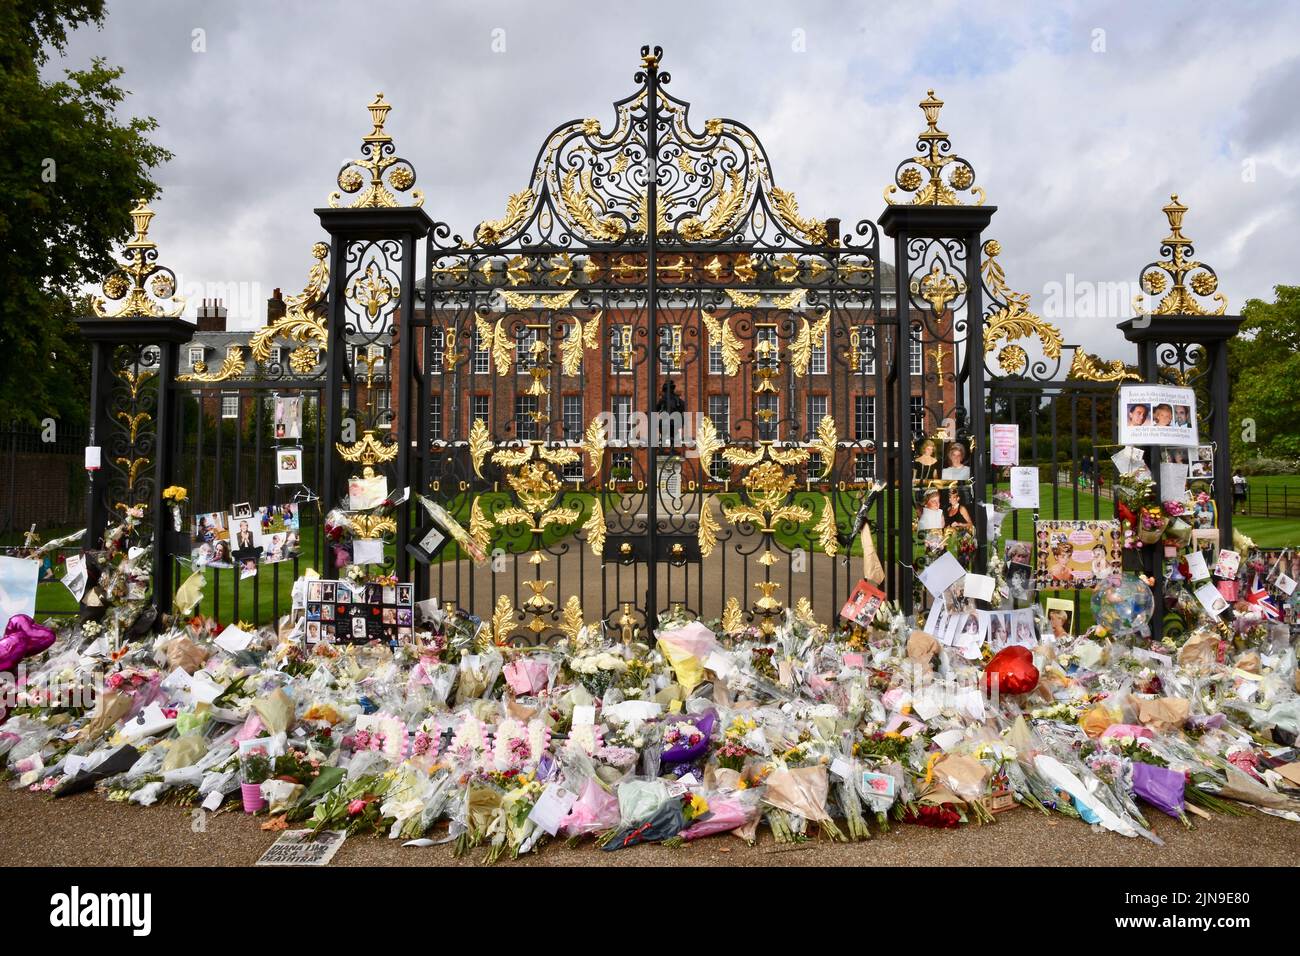 Princesa Diana 20th Aniversario, Tributos fueron dejados en el Golden Gates, Kensington Palace en memoria de la Princesa Diana que murió en París el 31.08.97. Kensington Gardens, Londres. REINO UNIDO Foto de stock